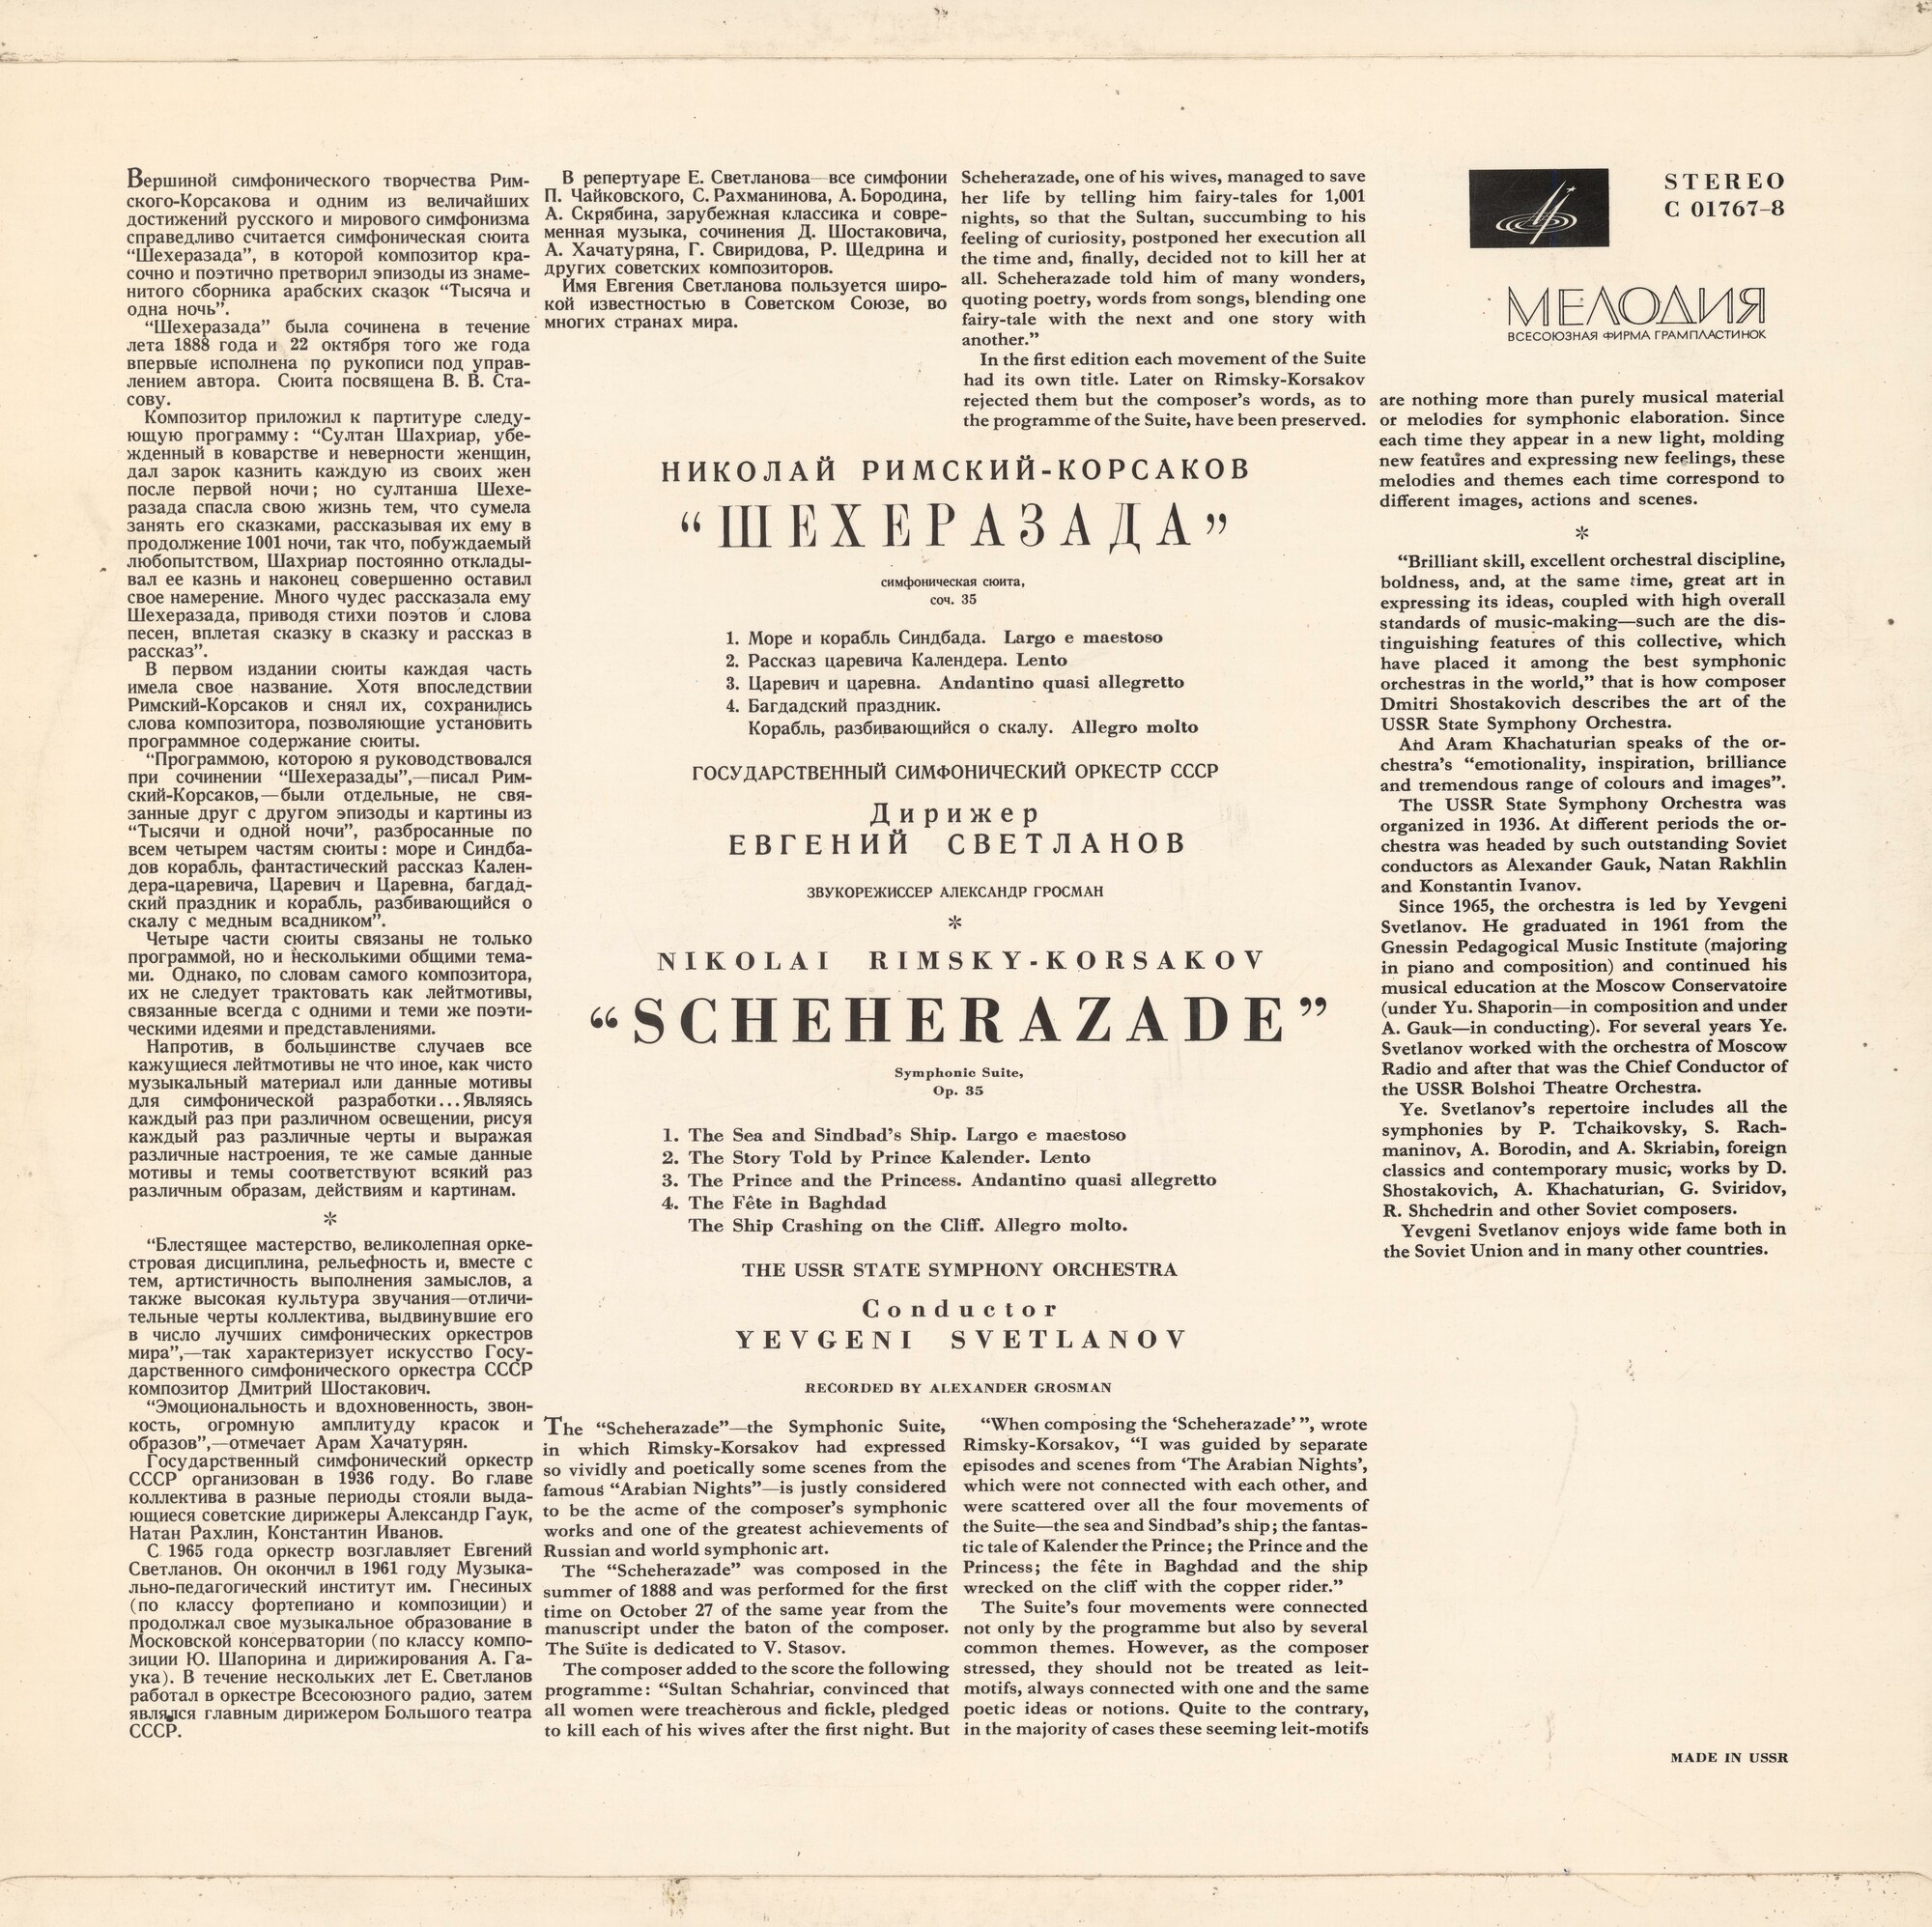 Н. РИМСКИЙ-КОРСАКОВ (1844-1908) Шехеразада: симфоническая сюита по 1001 ночи, соч. 35